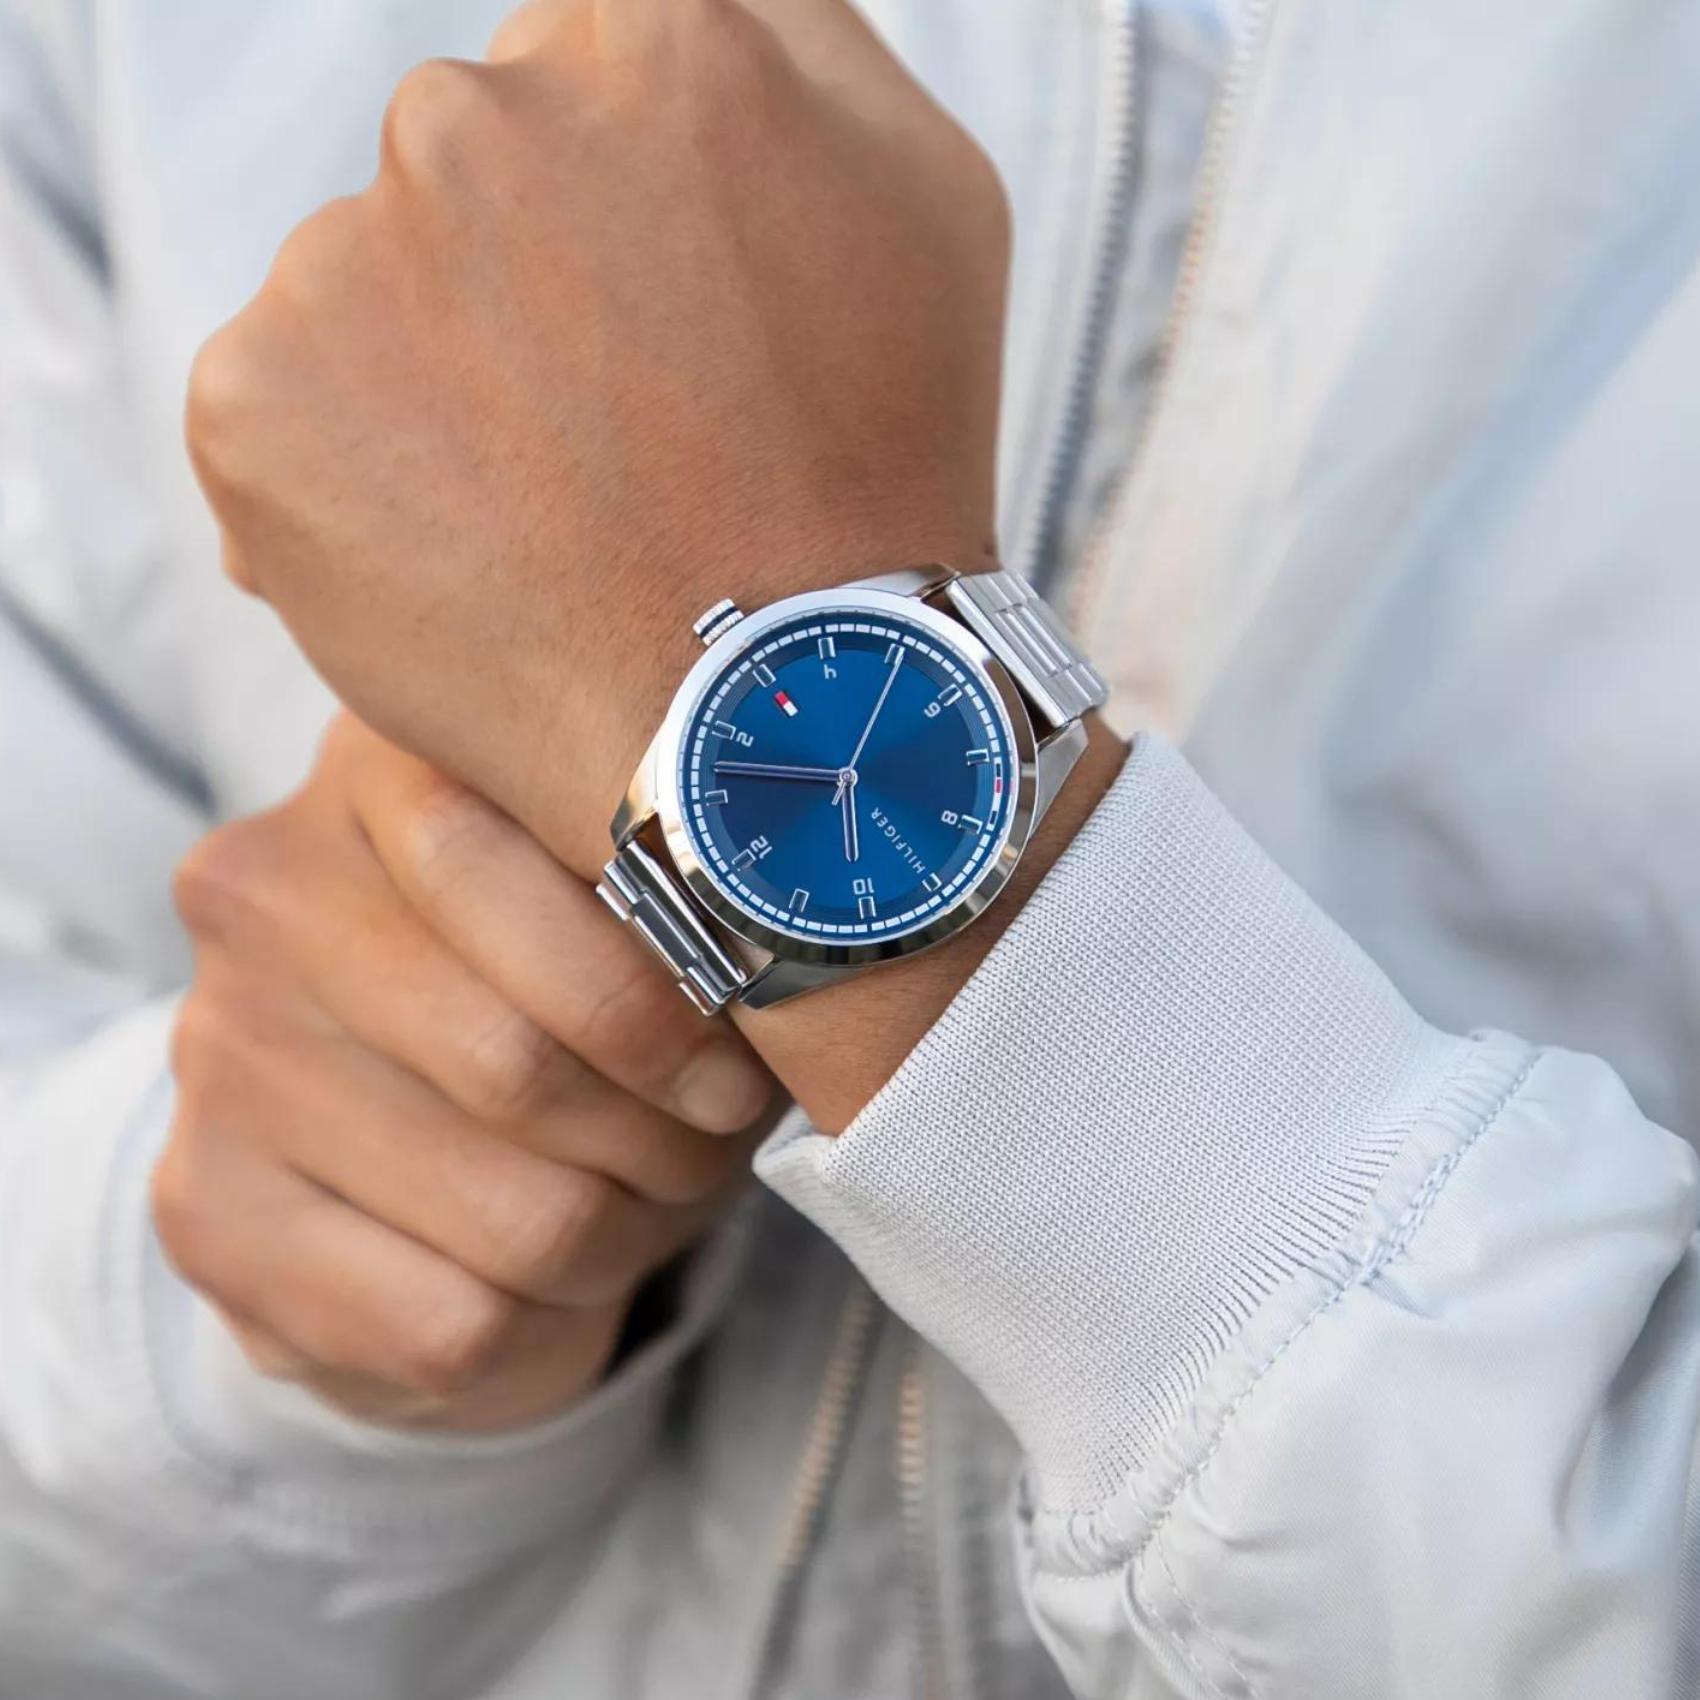 Αντρικό ρολόι Tommy Hilfiger Griffin 1710455 με ασημί ατσάλινο μπρασελέ και μπλε καντράν διαμέτρου 43mm.